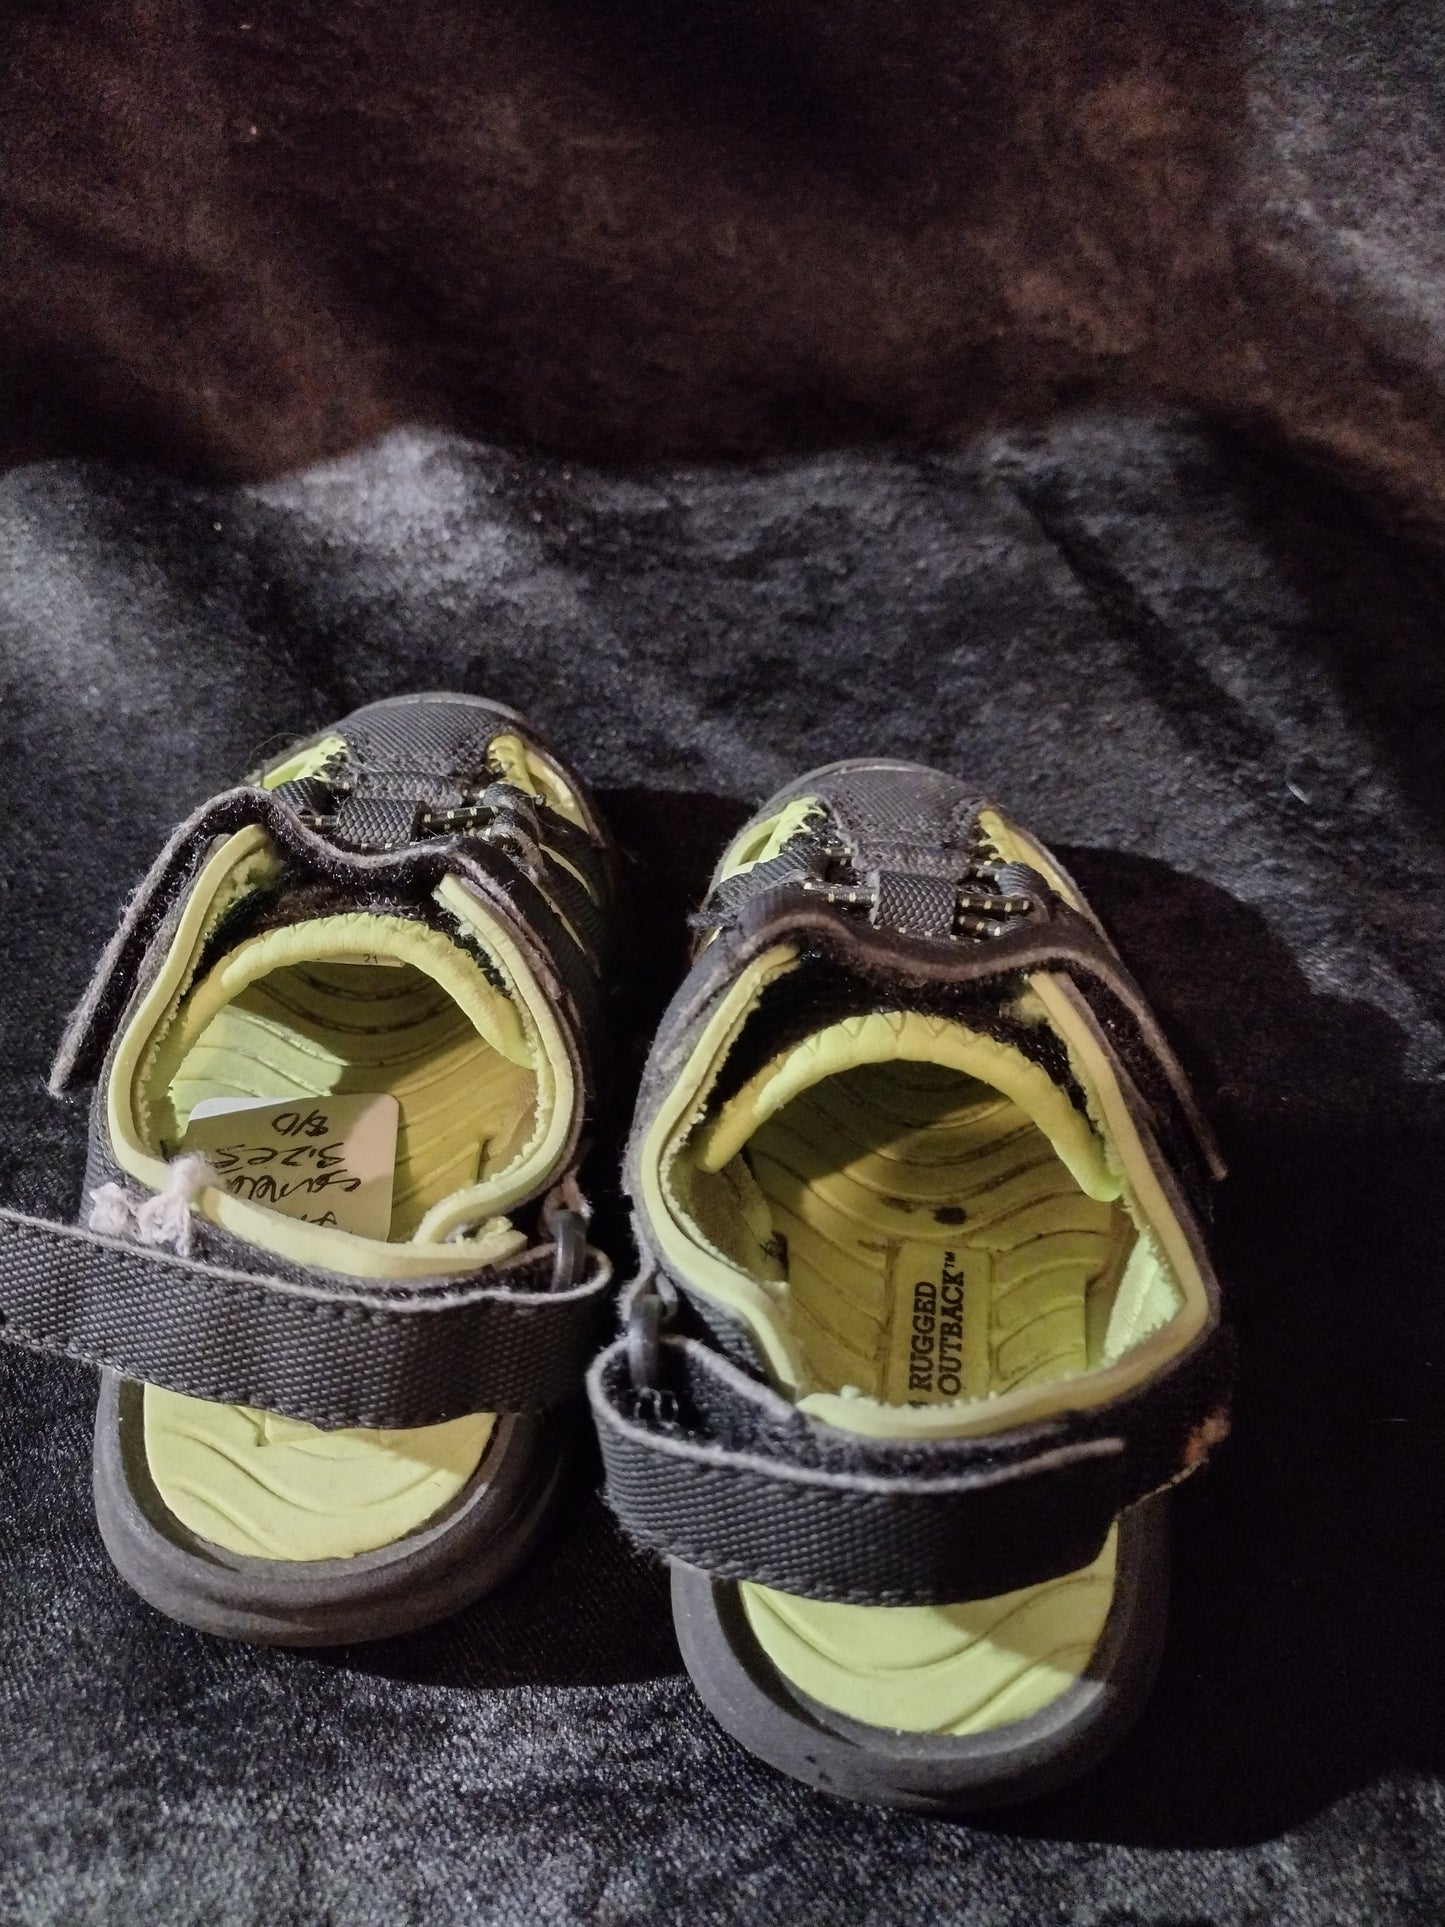 Boys infant shoes size 5